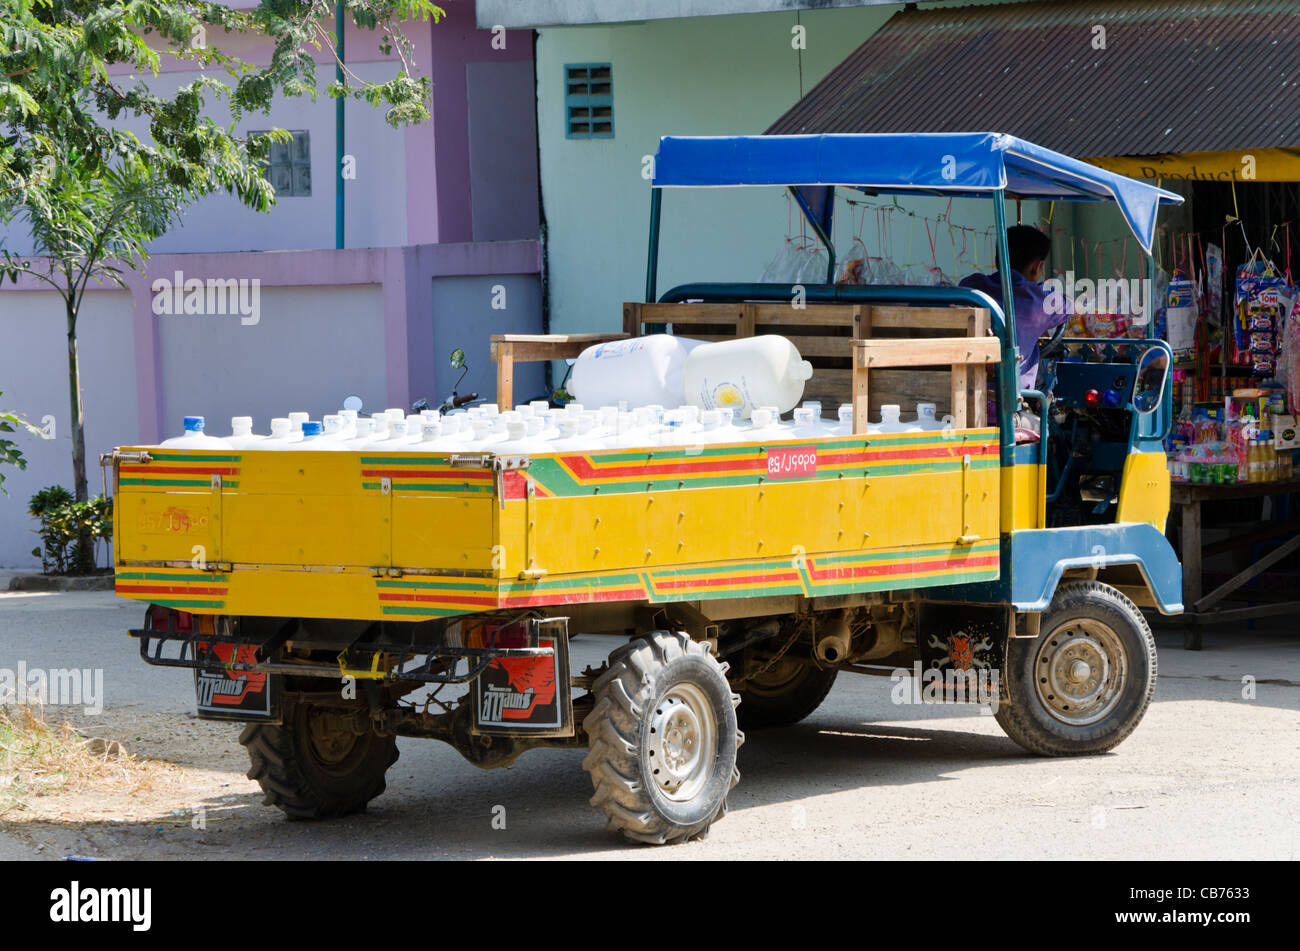 Parcheggiato giallo e blu piccolo consegna cinese carrello caricato con acqua in plastica bottiglie in Myanmar Tachileik vicino a Mae Sai in Thailandia Foto Stock